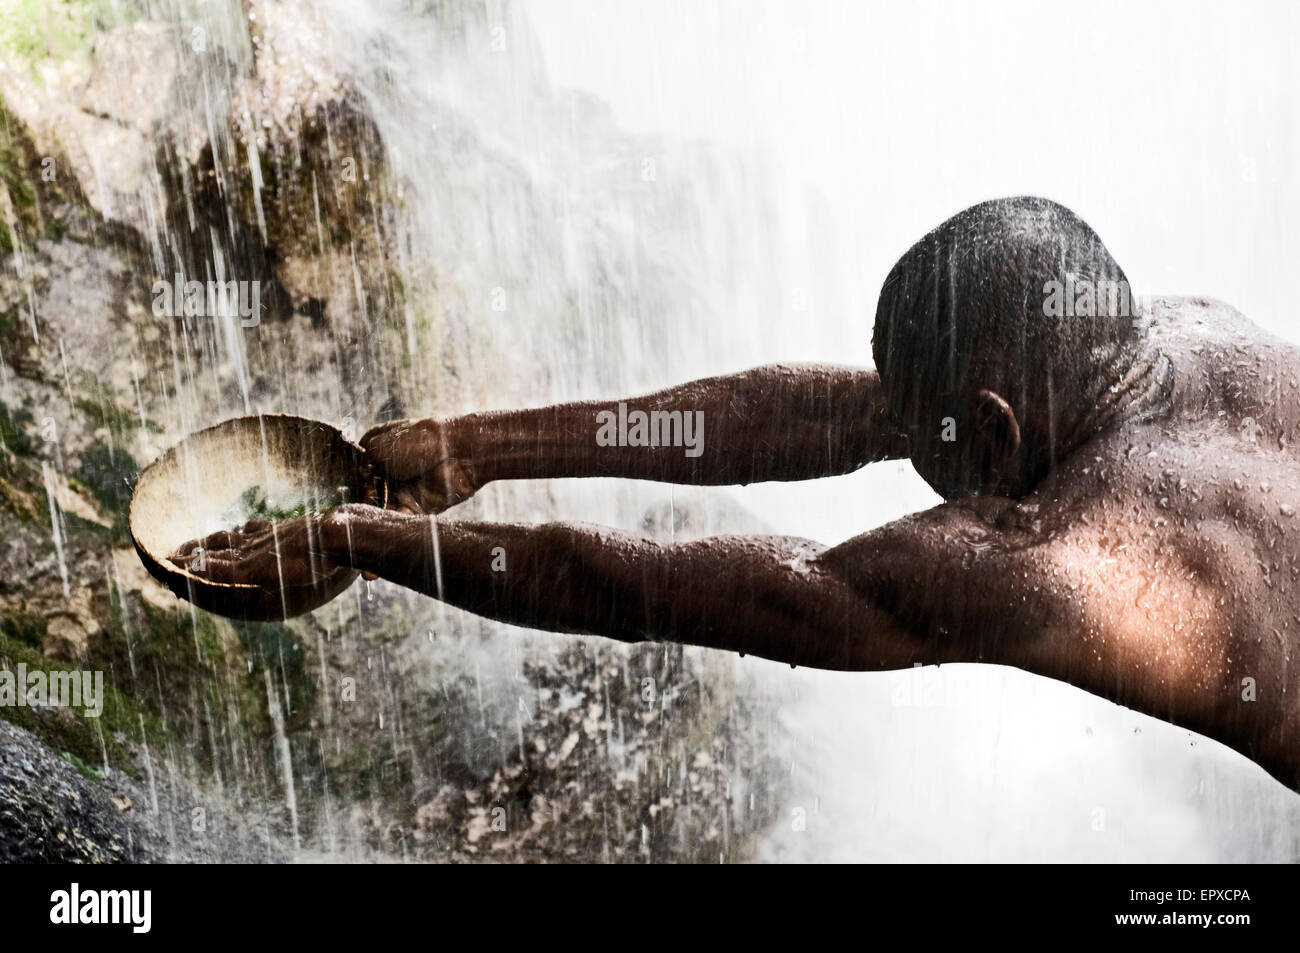 Voodoo Festival di Saut d'Eau, Haiti. Un uomo raccoglie l'acqua che cade dalla cascata di purificare la sua. In questa festa del voodoo Foto Stock